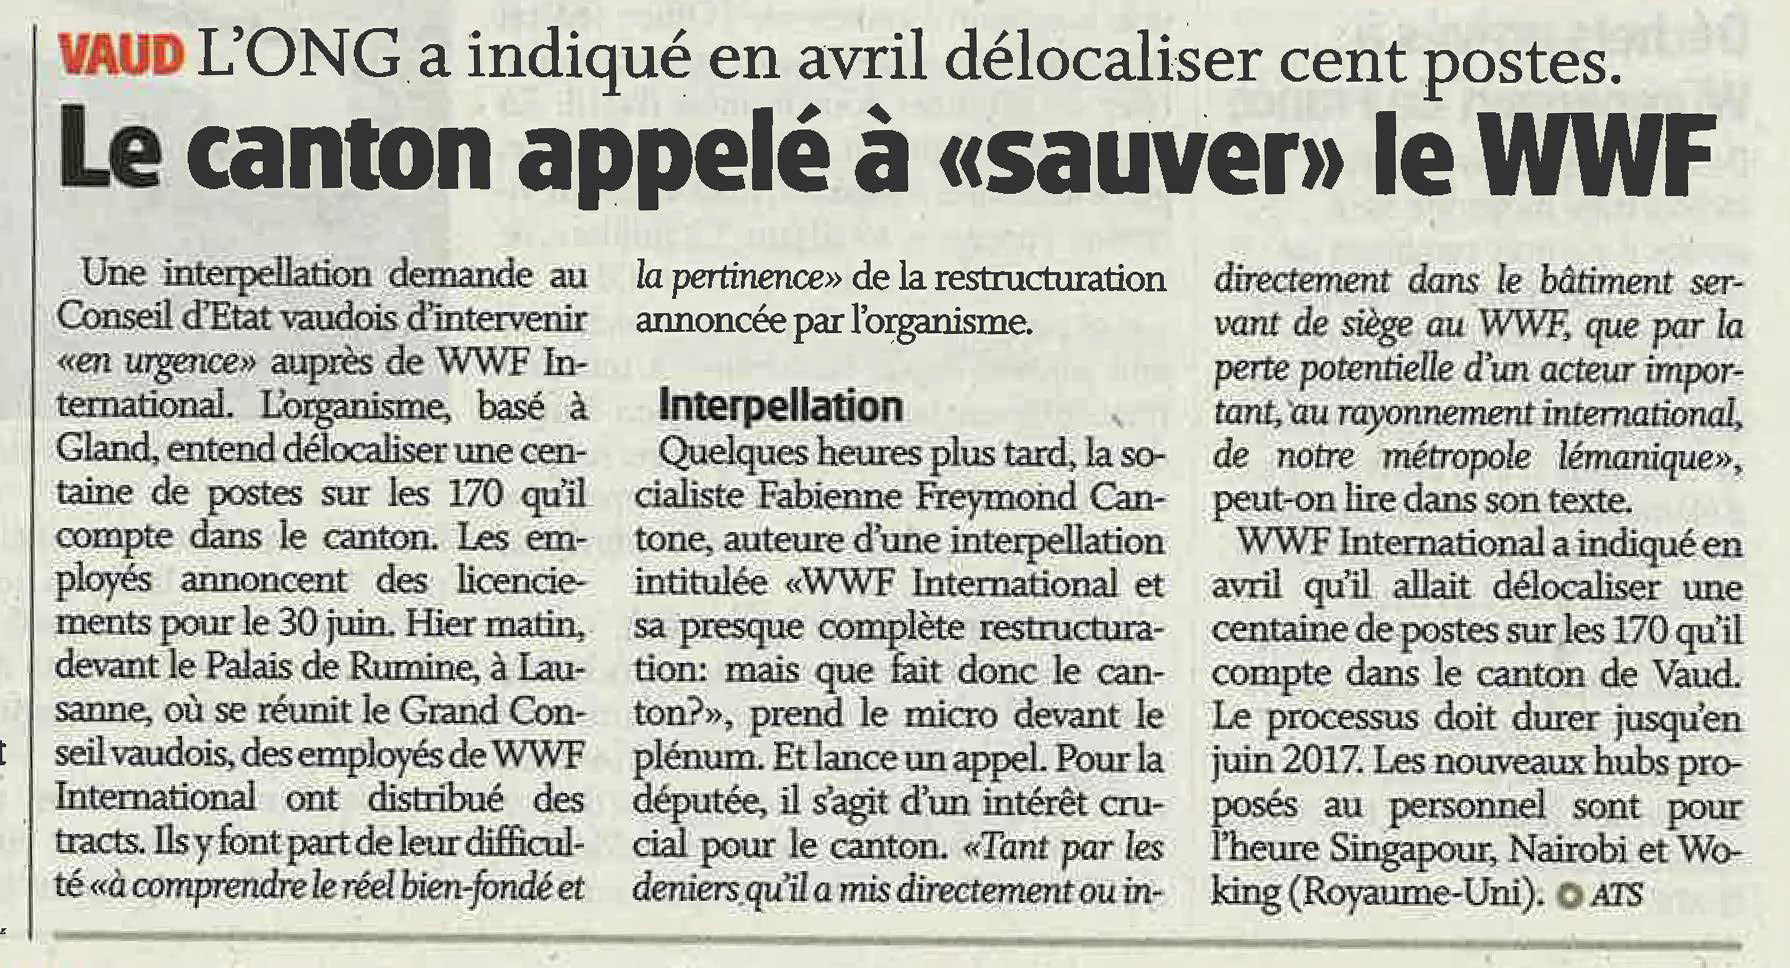 2016-06-01 La Côte - Le canton appelé à "sauver" le WWF